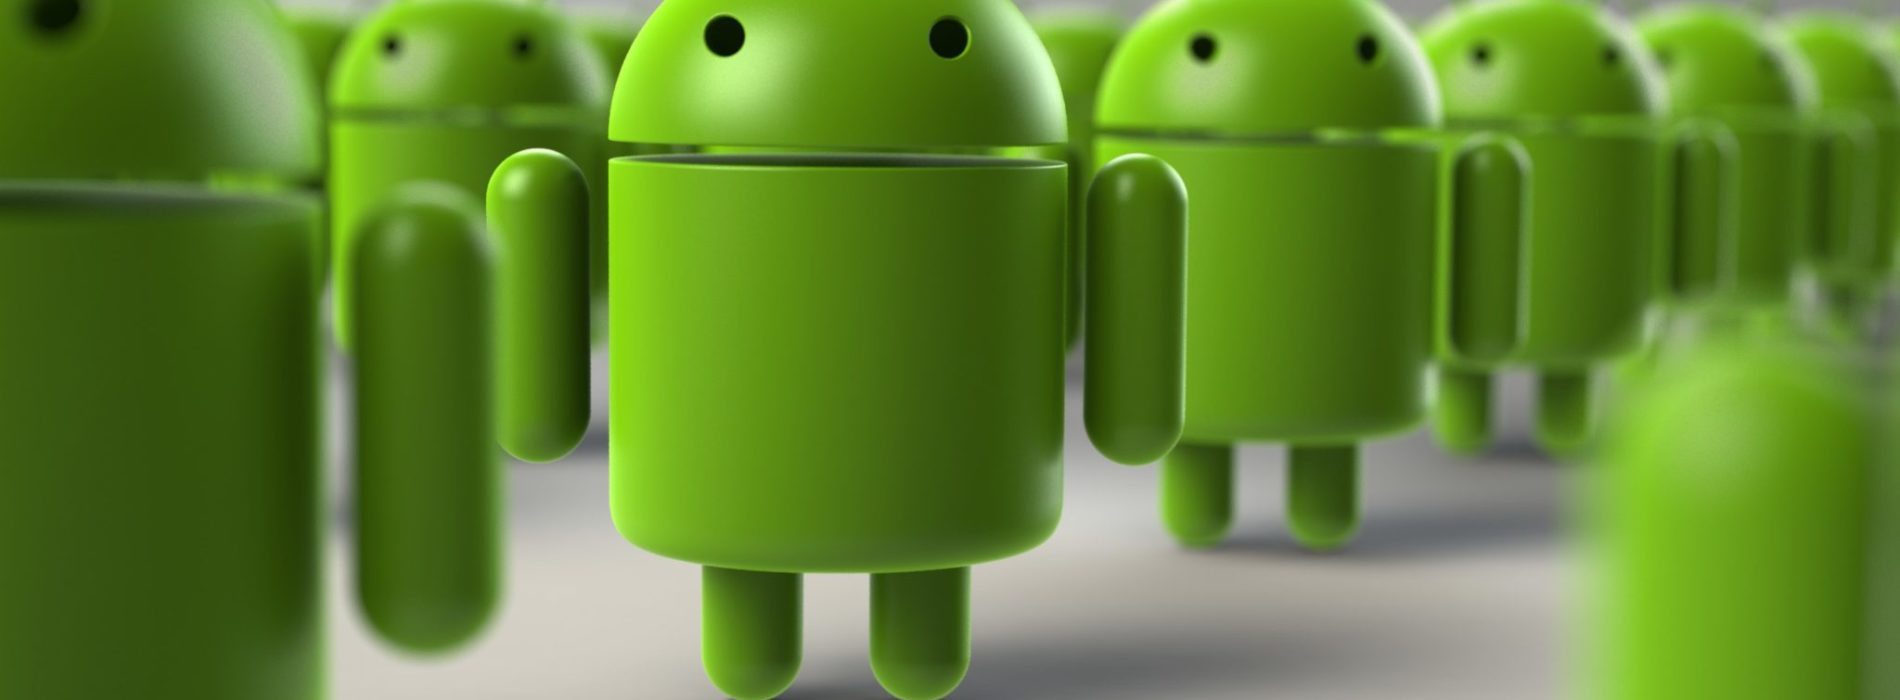 ,Android è su 9 smartphone su 10